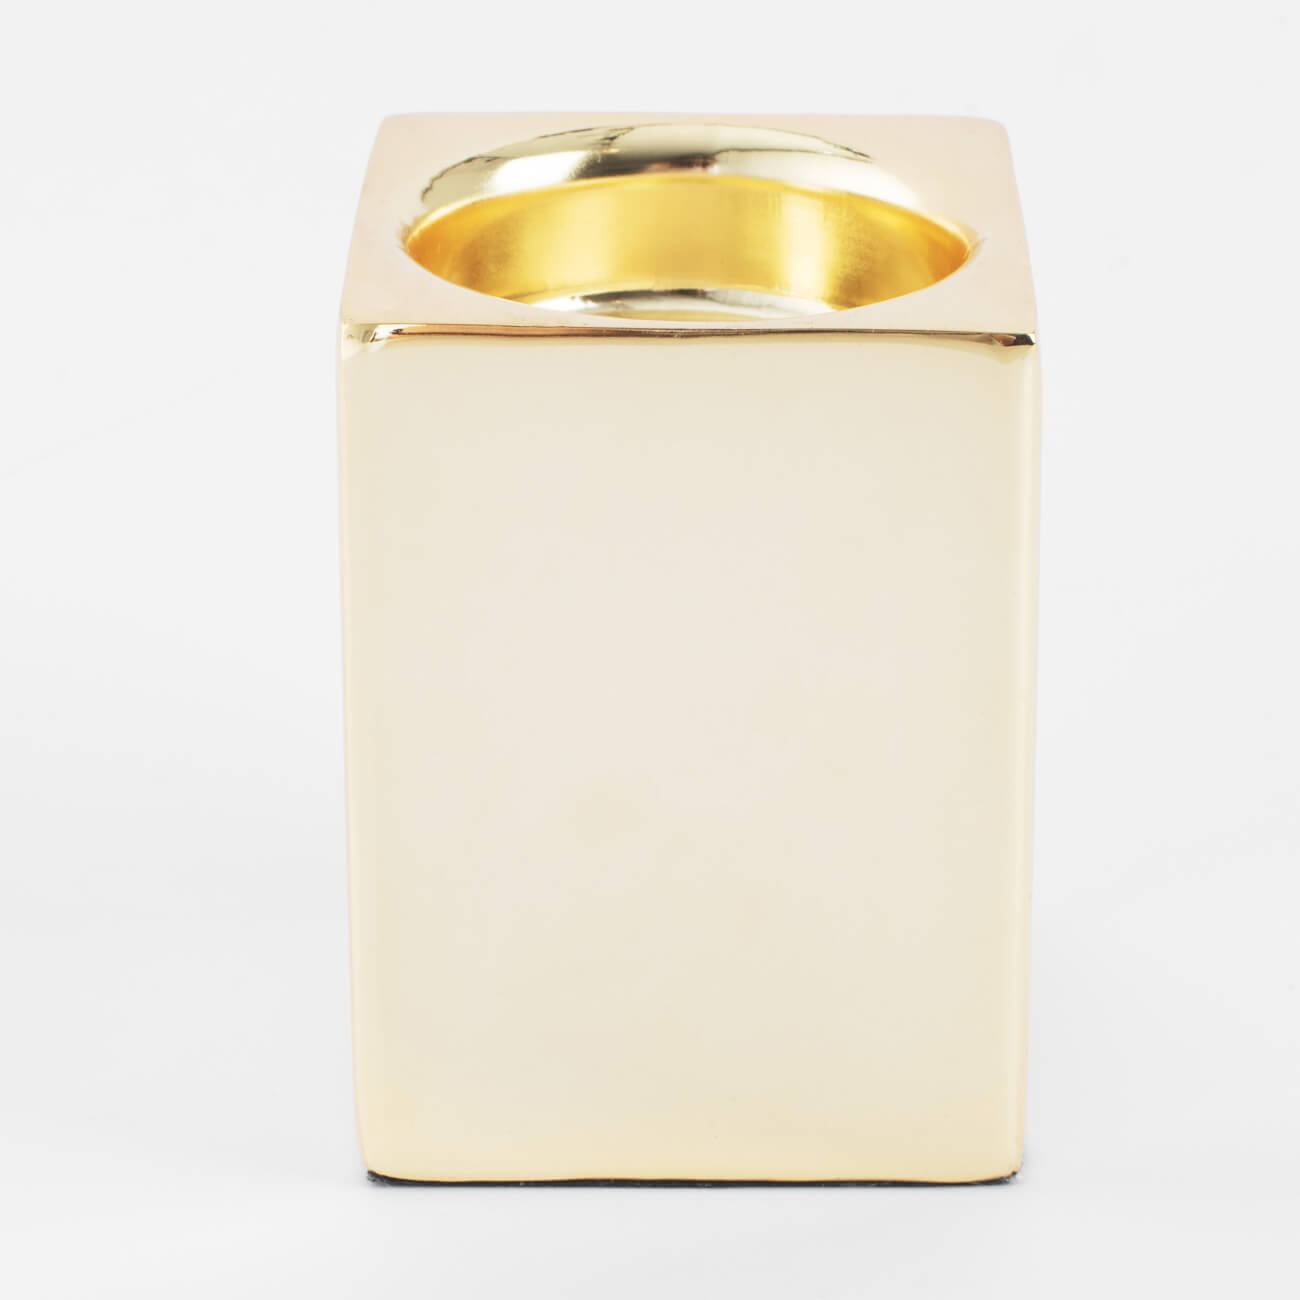 Подсвечник, 7 см, для чайной свечи, металл, золотистый, Fantastic gold подсвечник для 1 свечи баланс металл